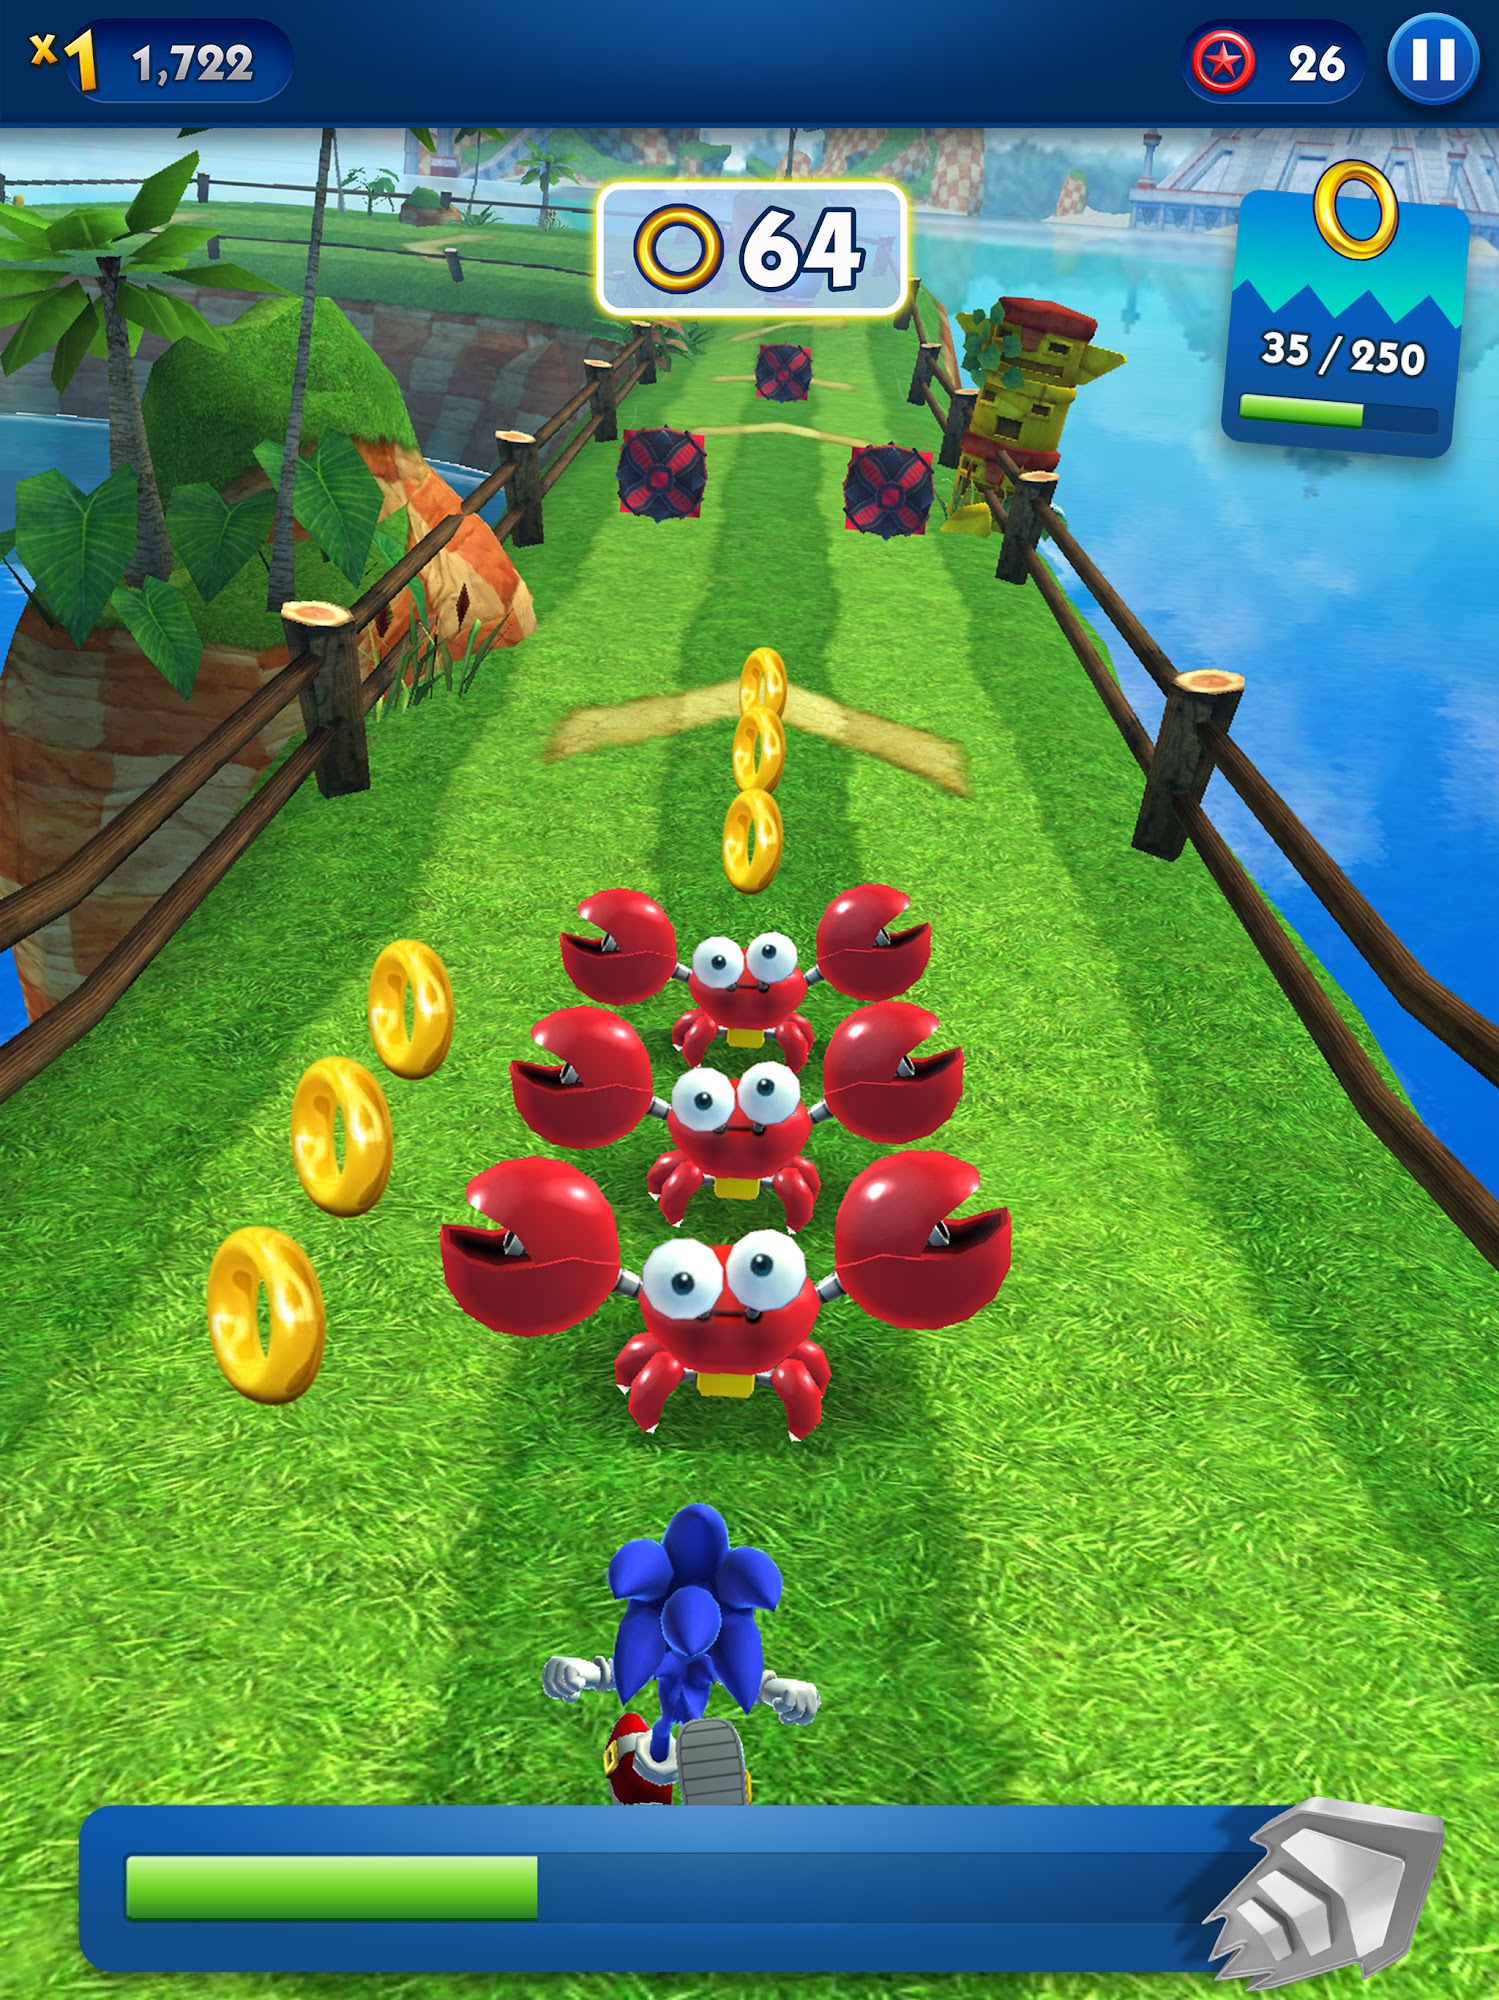 Télécharger Sonic Prime Dash pour Android A.n.d.r.o.i.d. .5...0. .a.n.d. .m.o.r.e gratuit.